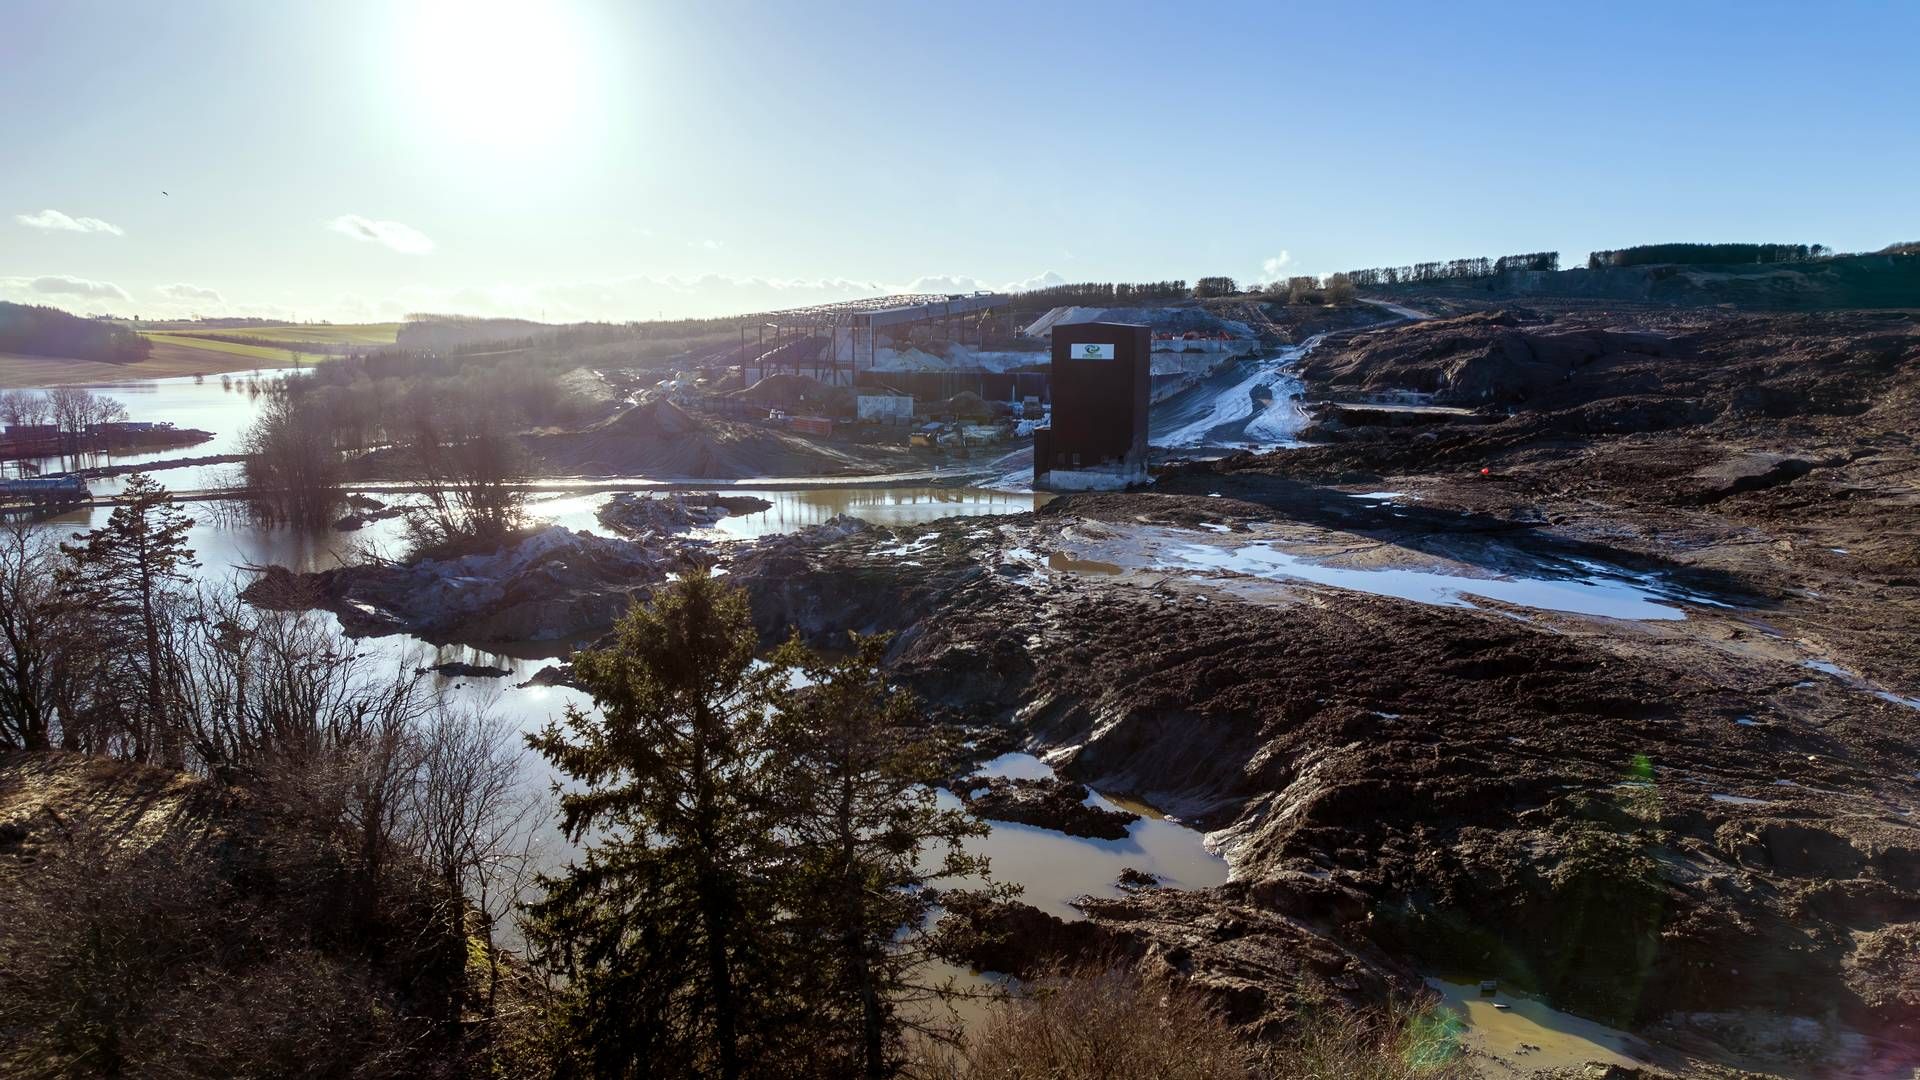 Nordic Waste blev erklæret konkurs i januar, efter at et jordskred i december kom ud af kontrol og bremsede selskabets drift med at håndtere rent eller lettere forurenet jord, der skulle genetablere en gammel lergrav. | Foto: Benny Kjølhede